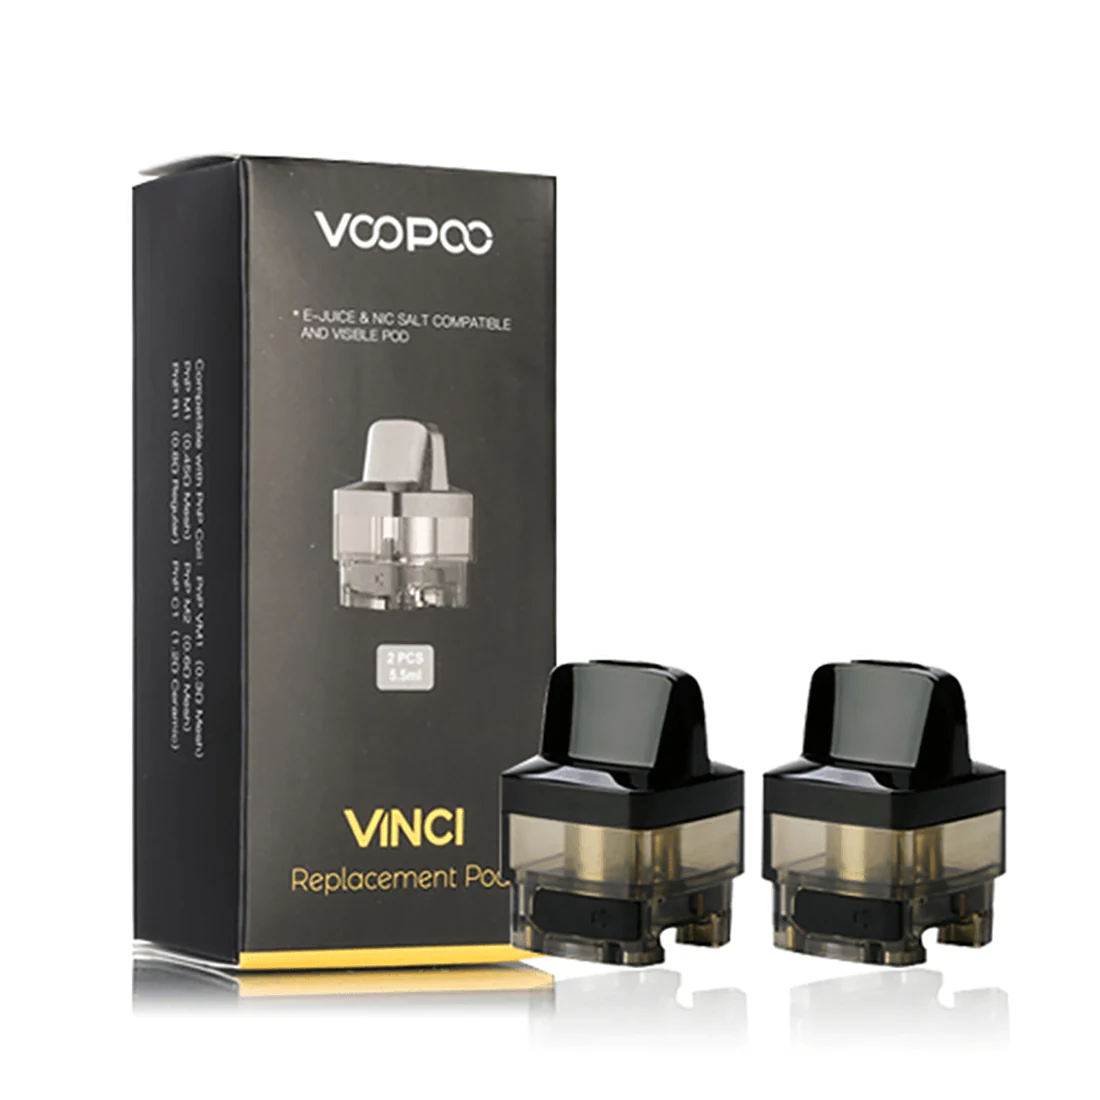 Voopoo-VINCI-Replacement-POD-03